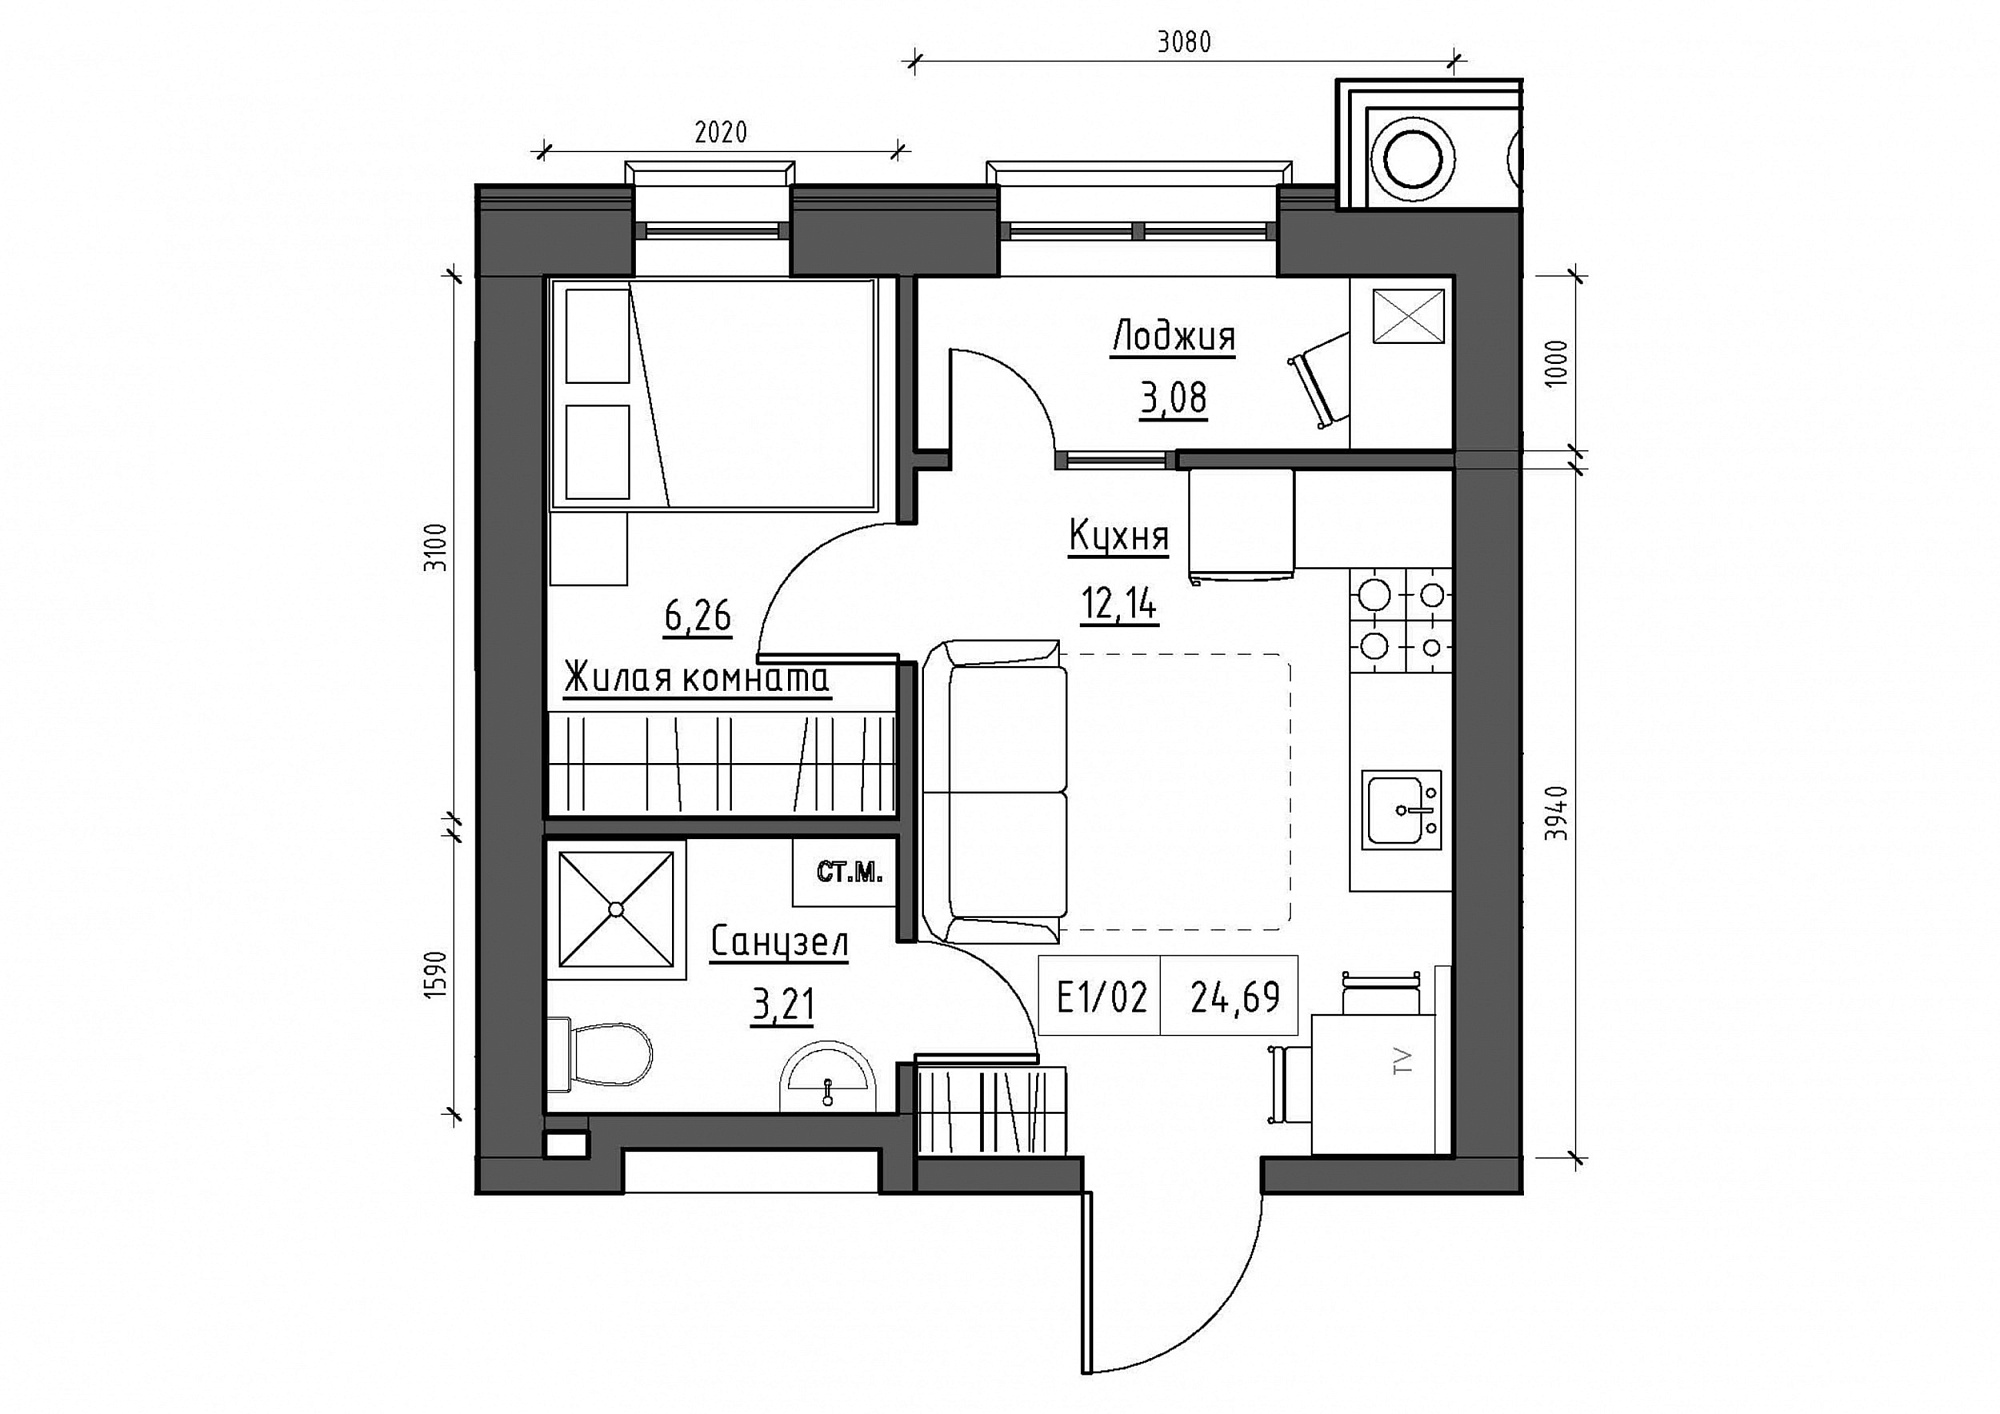 Планування 1-к квартира площею 24.69м2, KS-011-05/0017.